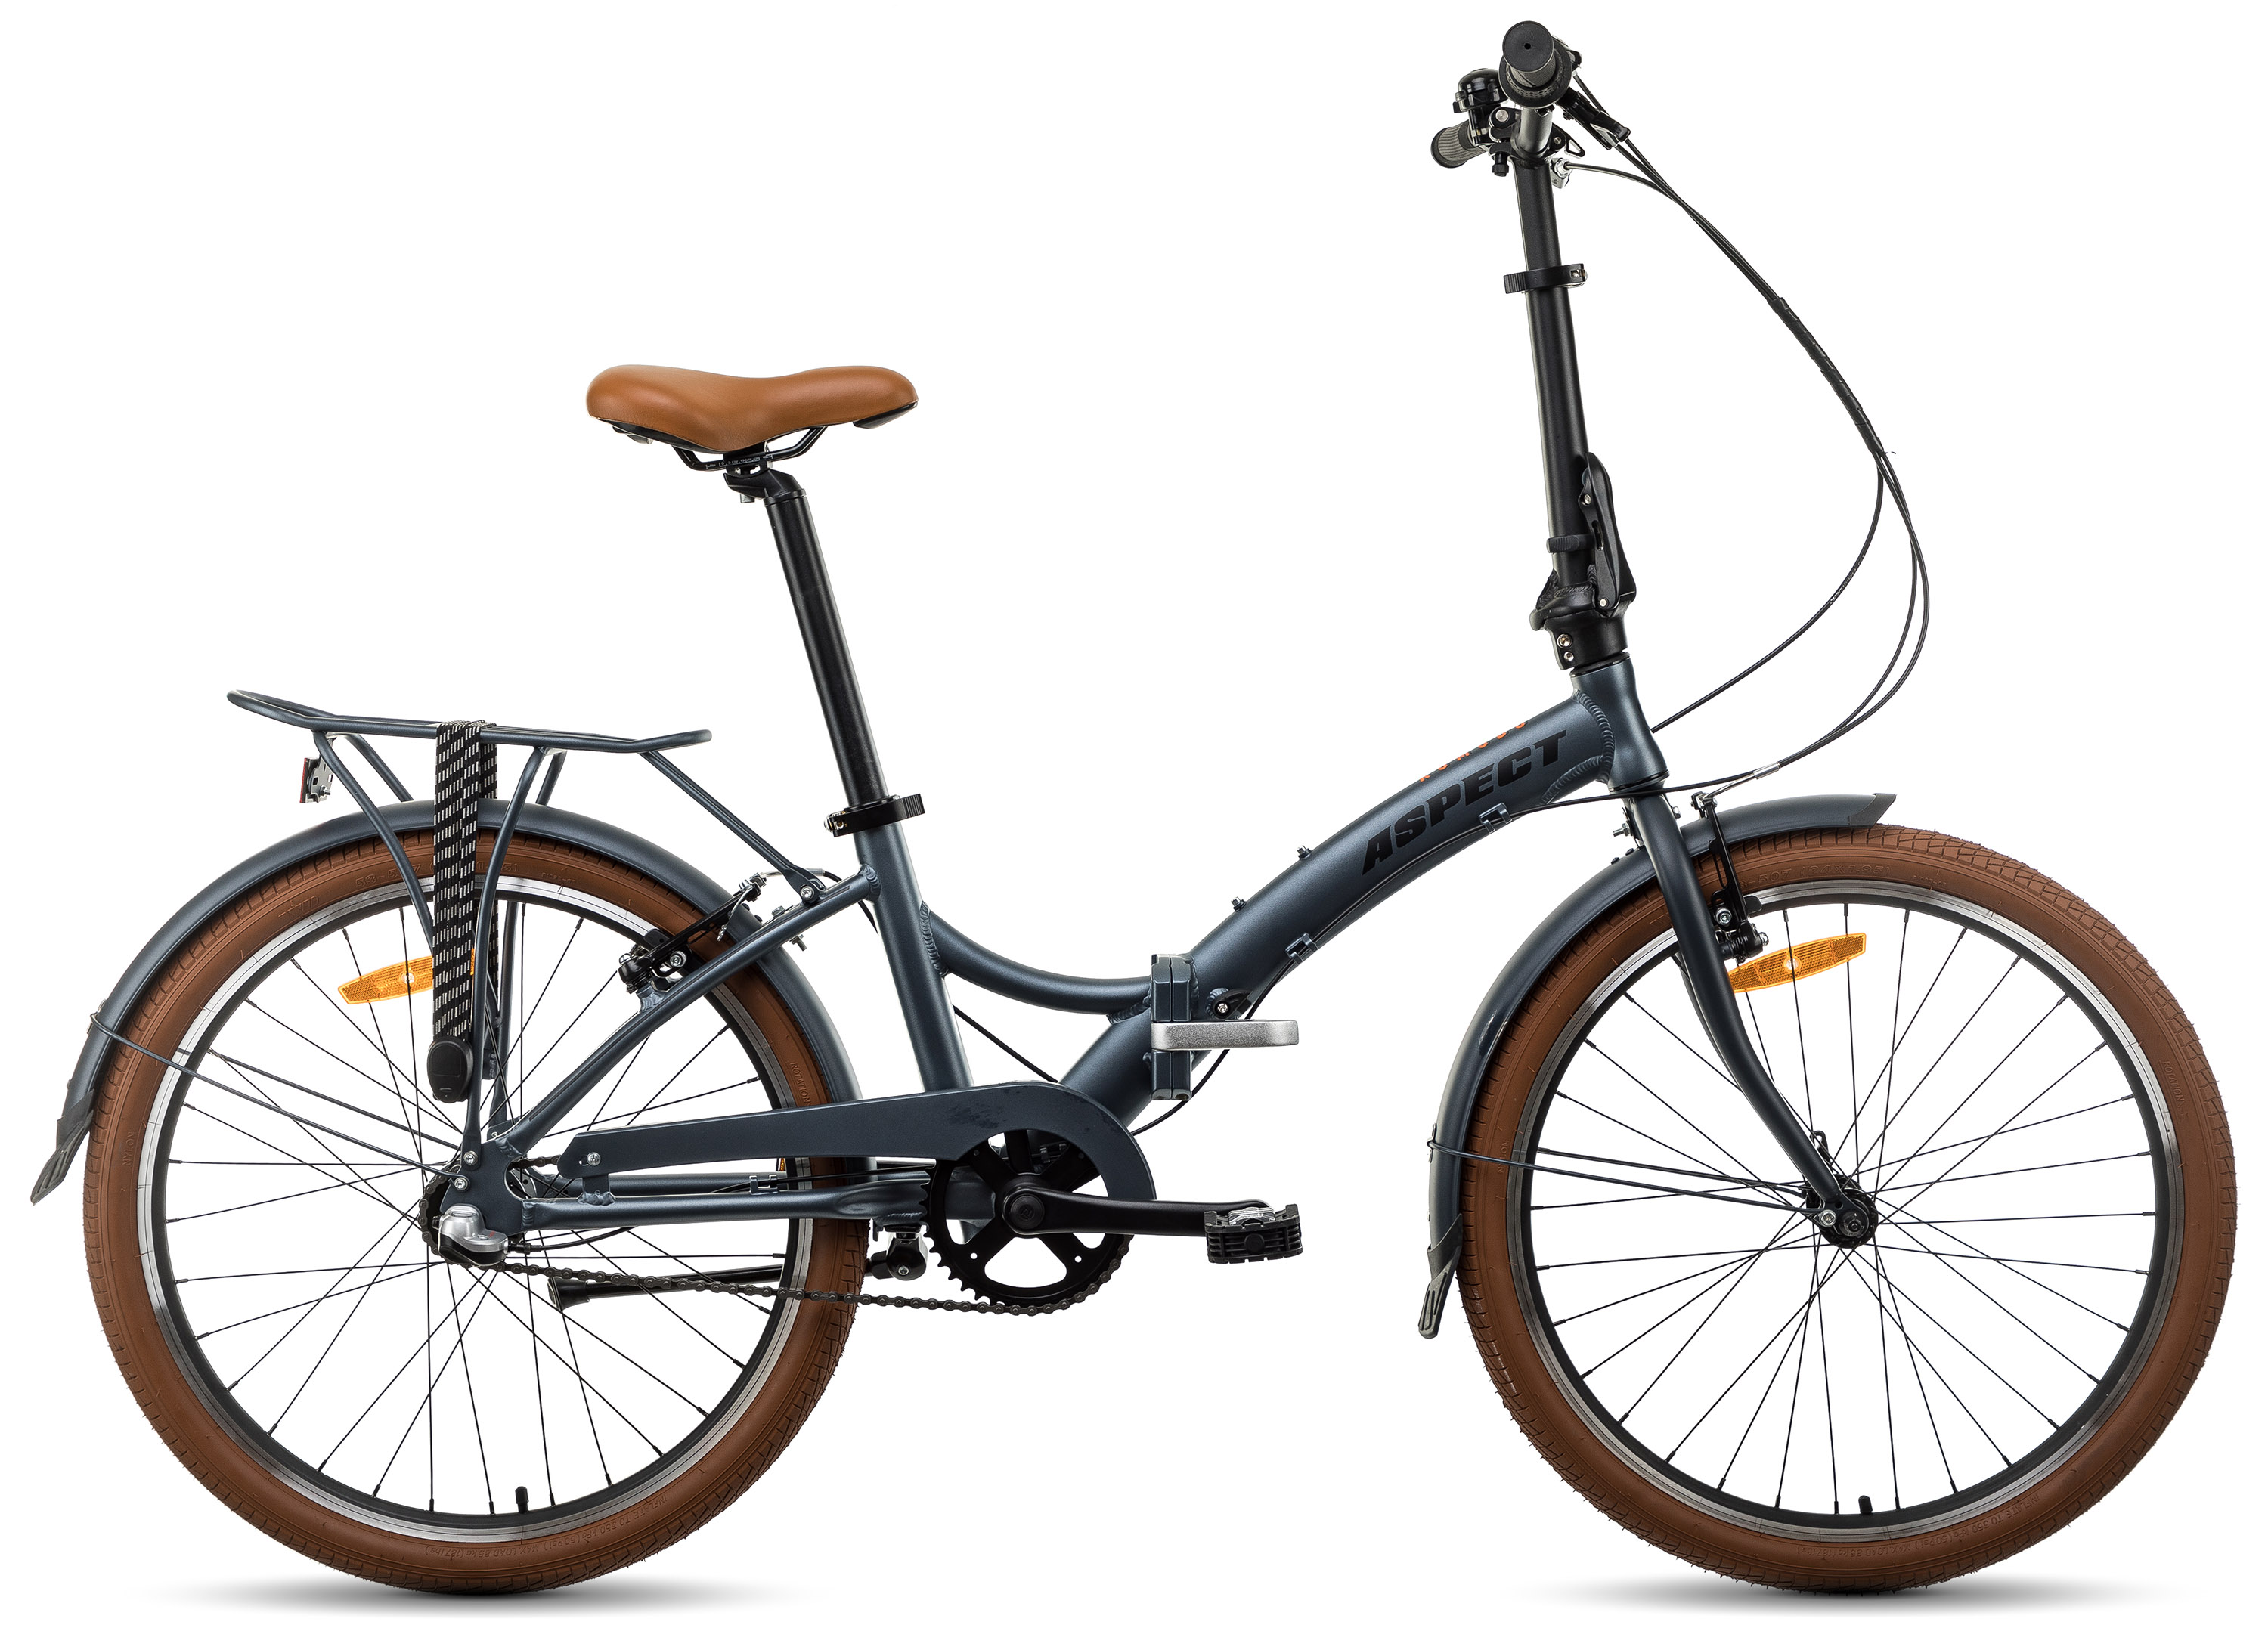  Отзывы о Складном велосипеде Aspect Komodo 3 (2021) 2021